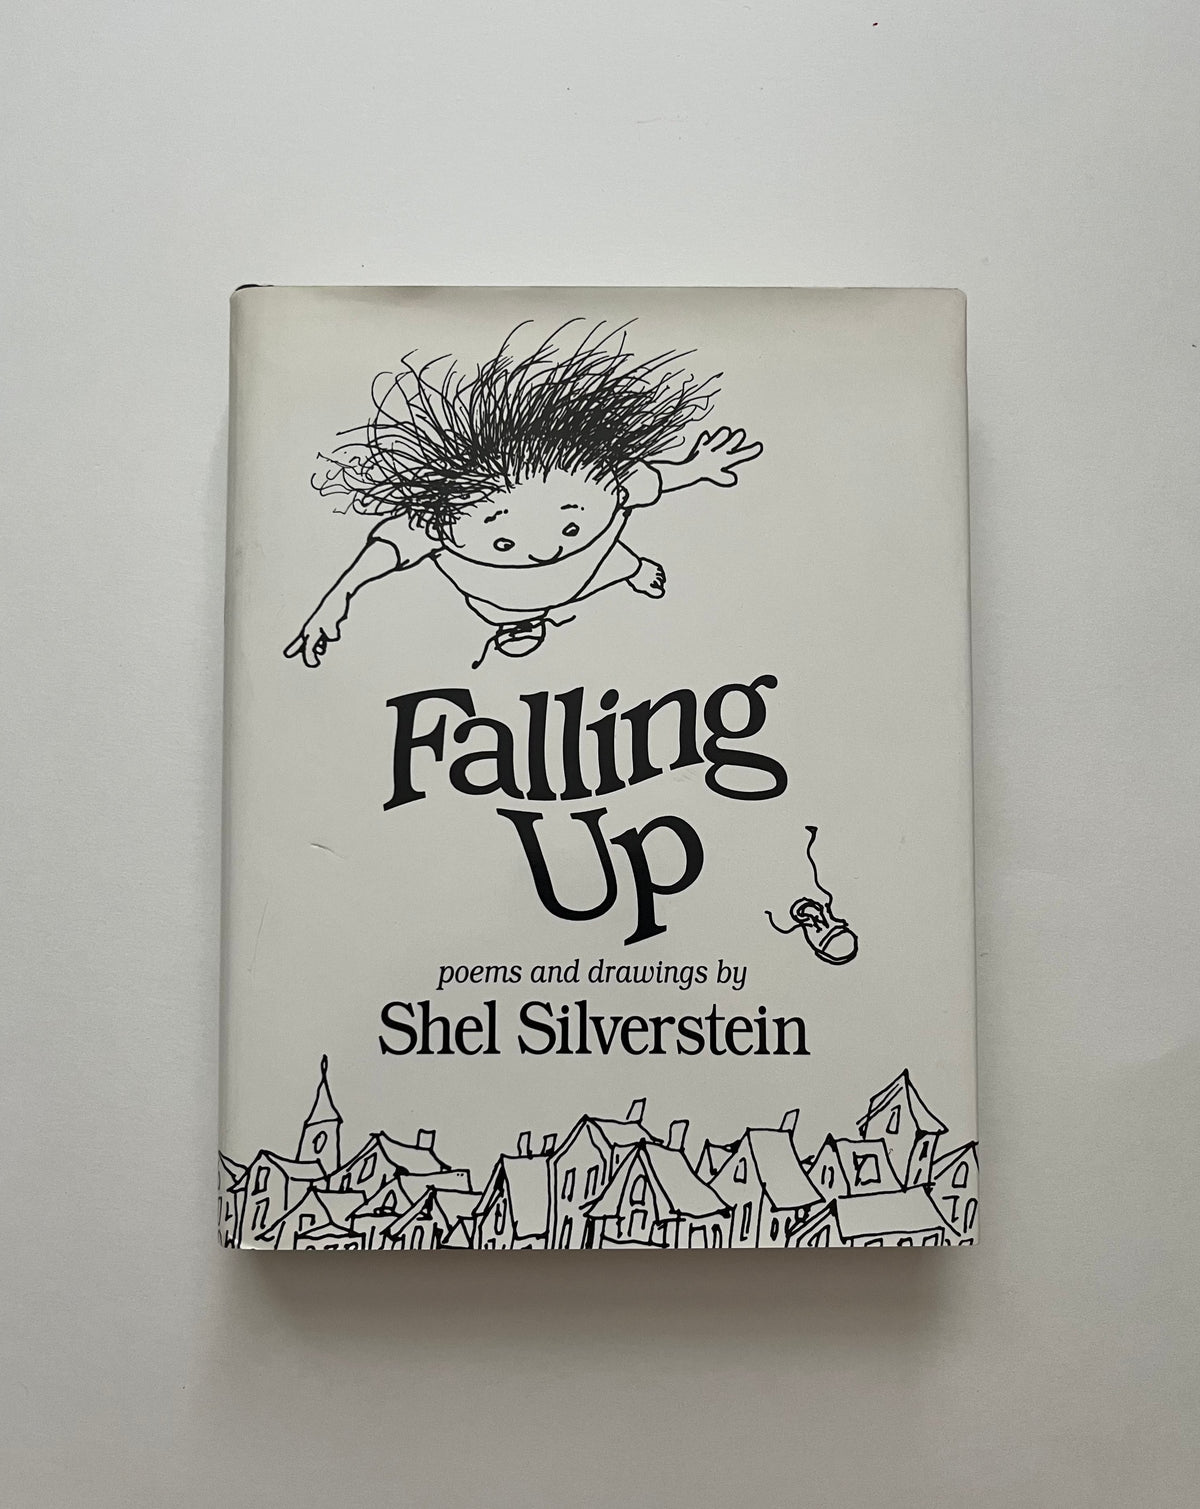 Falling Up by Shel Silverstein